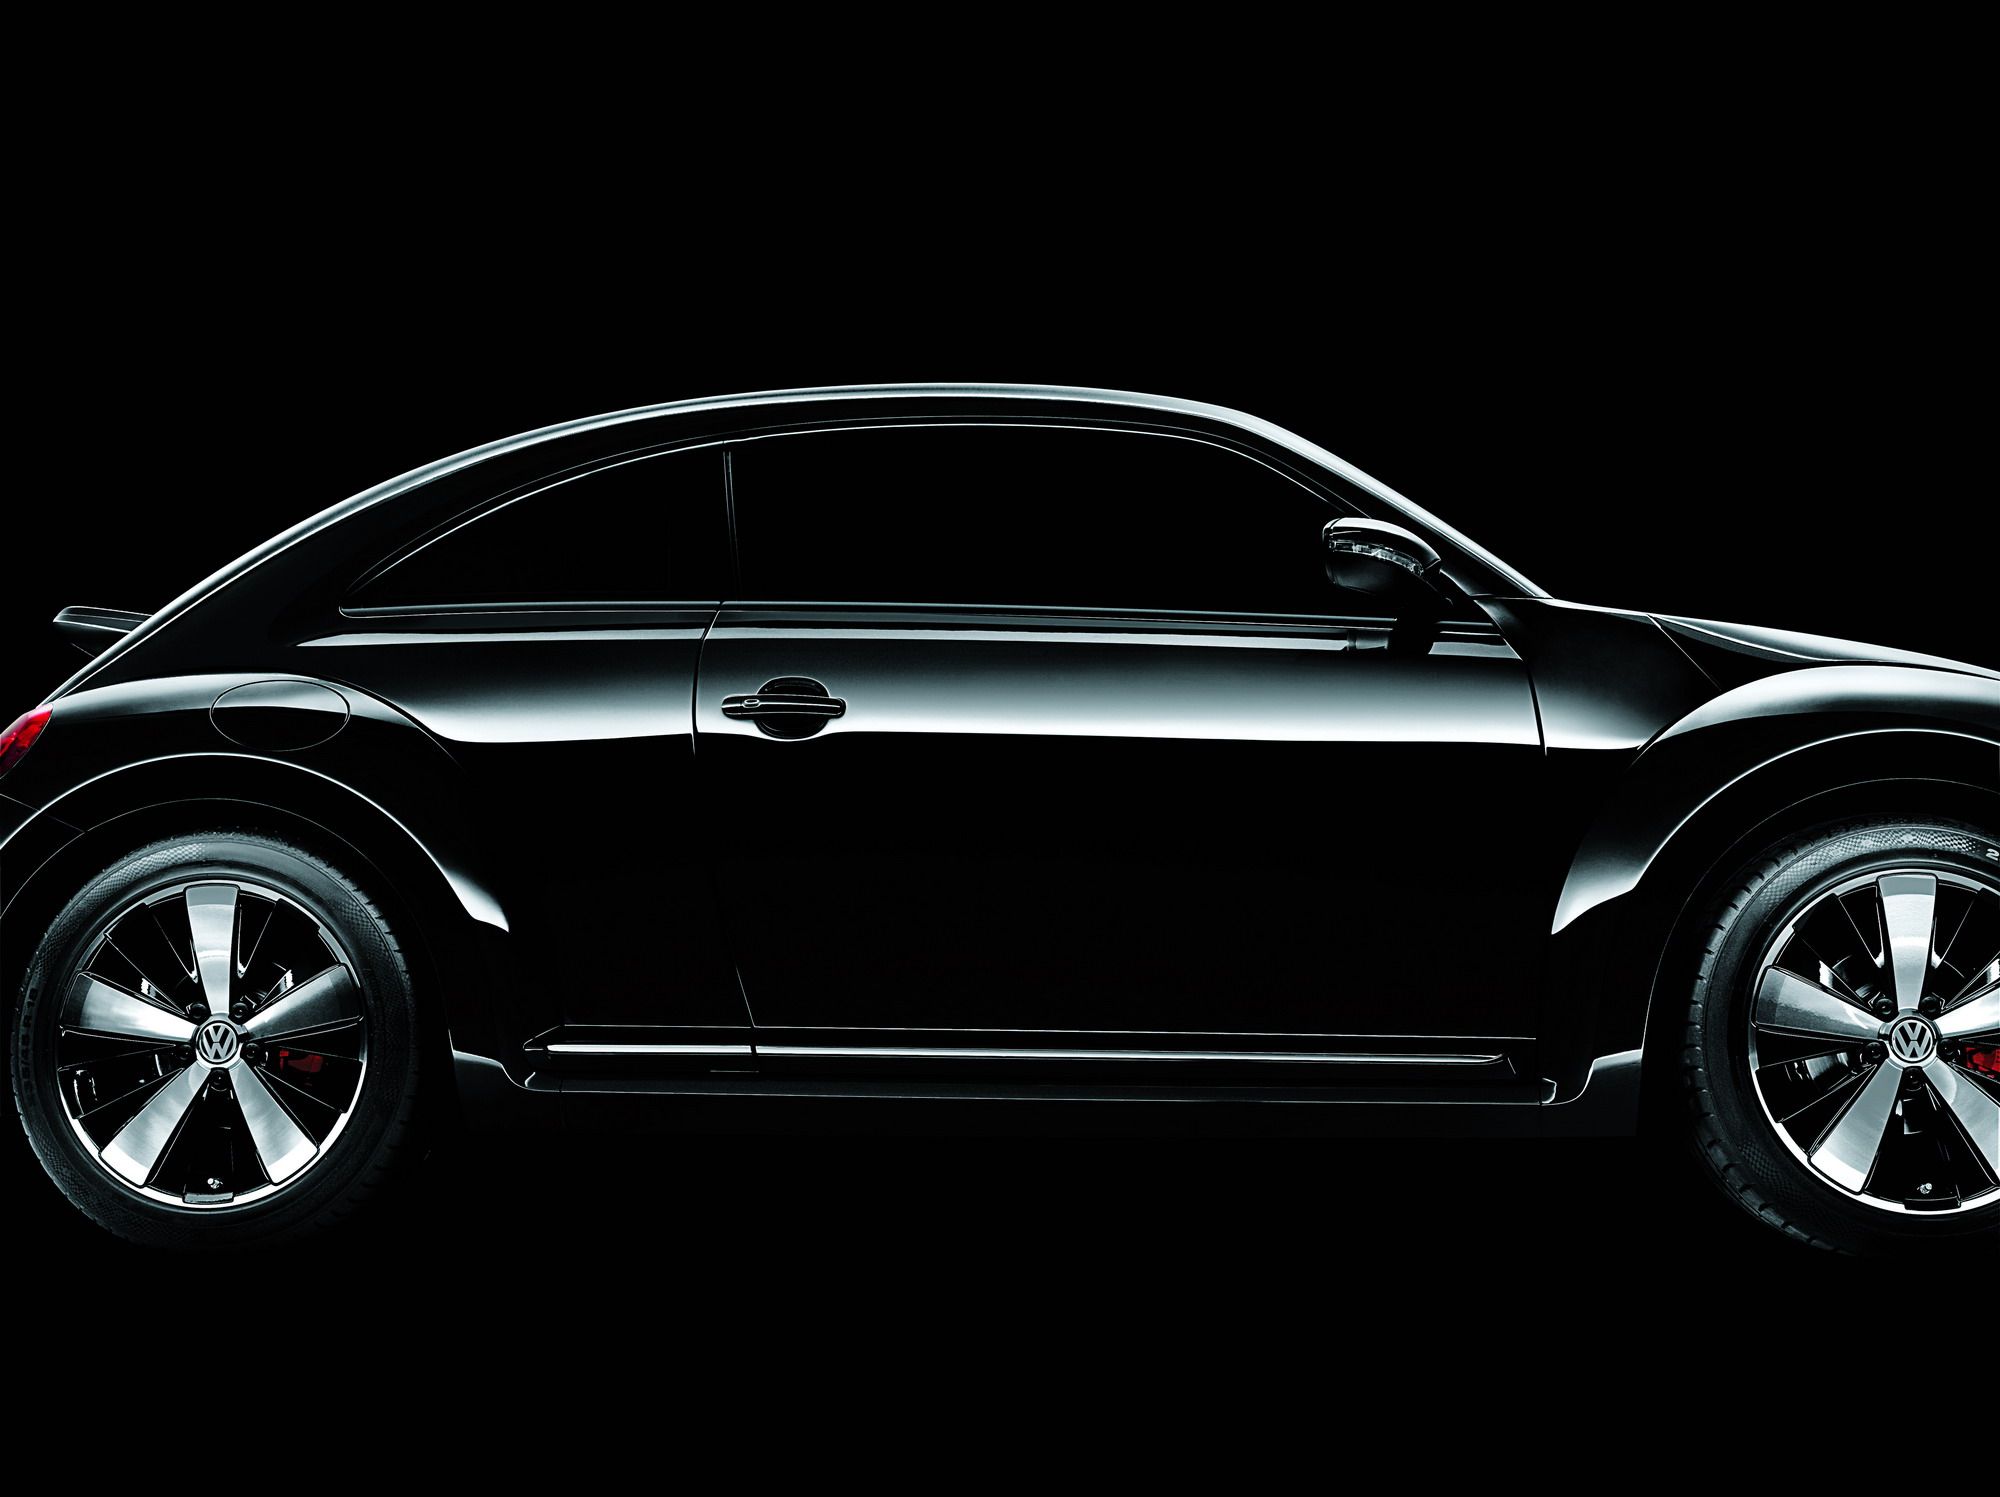 2012 Volkswagen Beetle Black Turbo Launch Edition